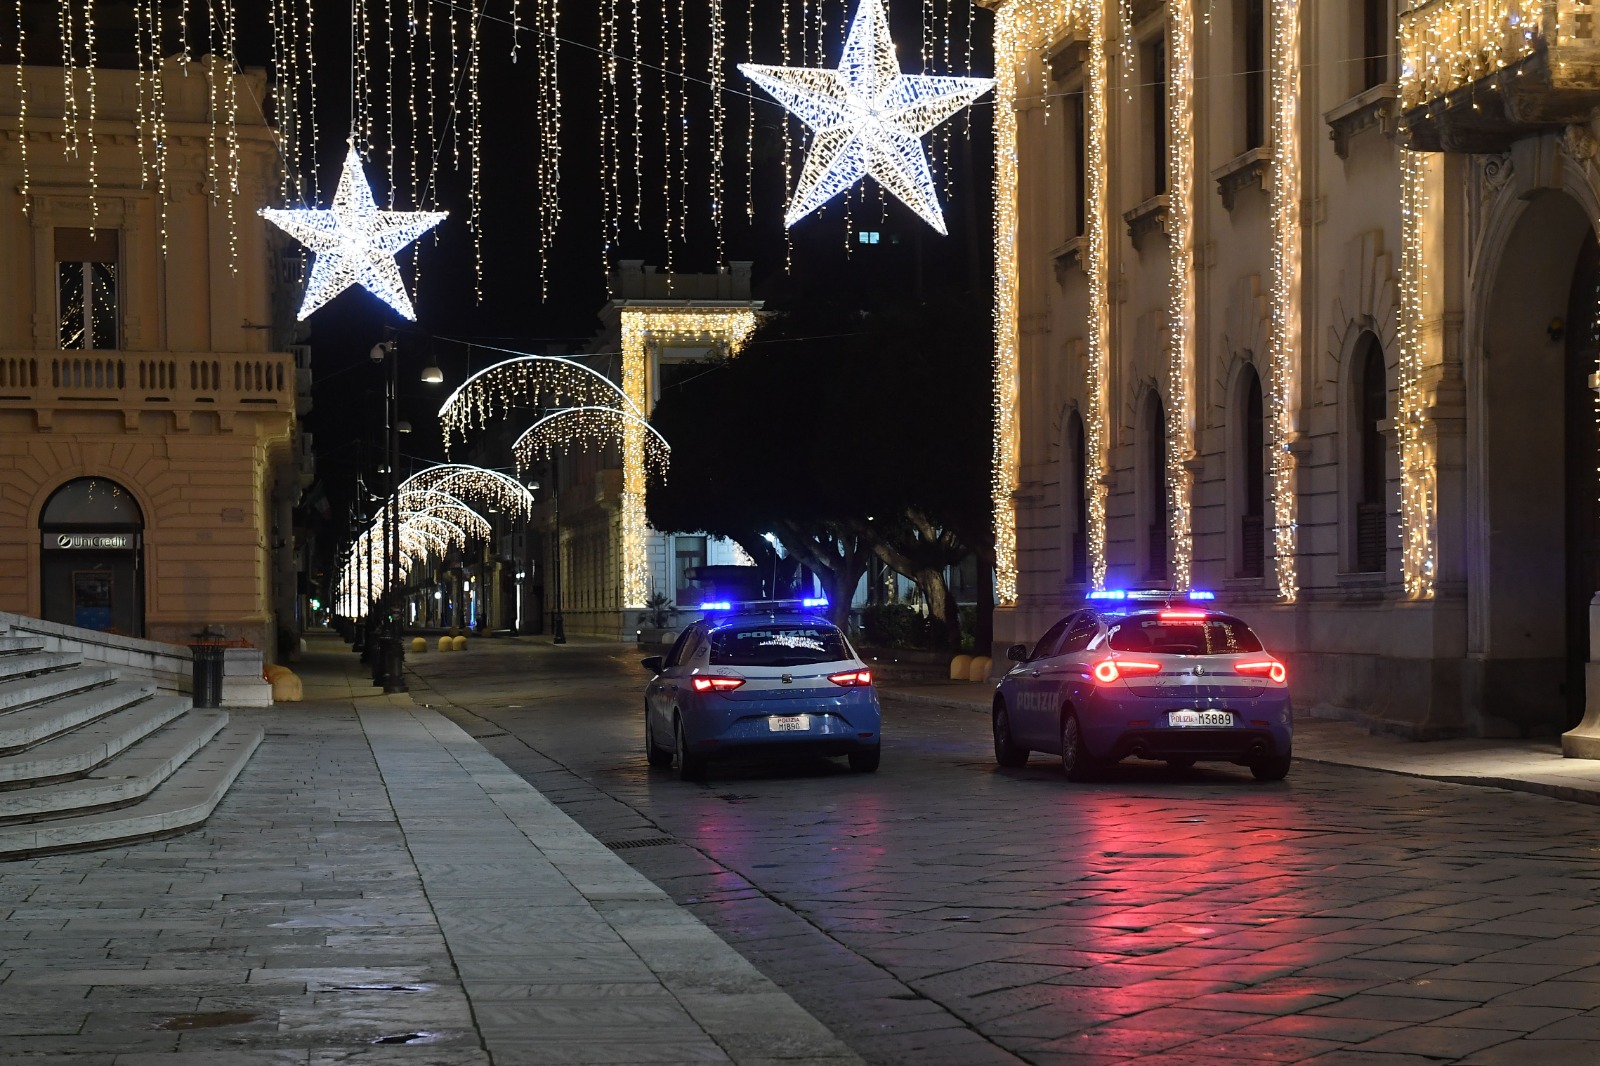 Capodanno a Reggio Calabria: strade deserte, solo il bagliore delle volanti ad illuminare il centro storico